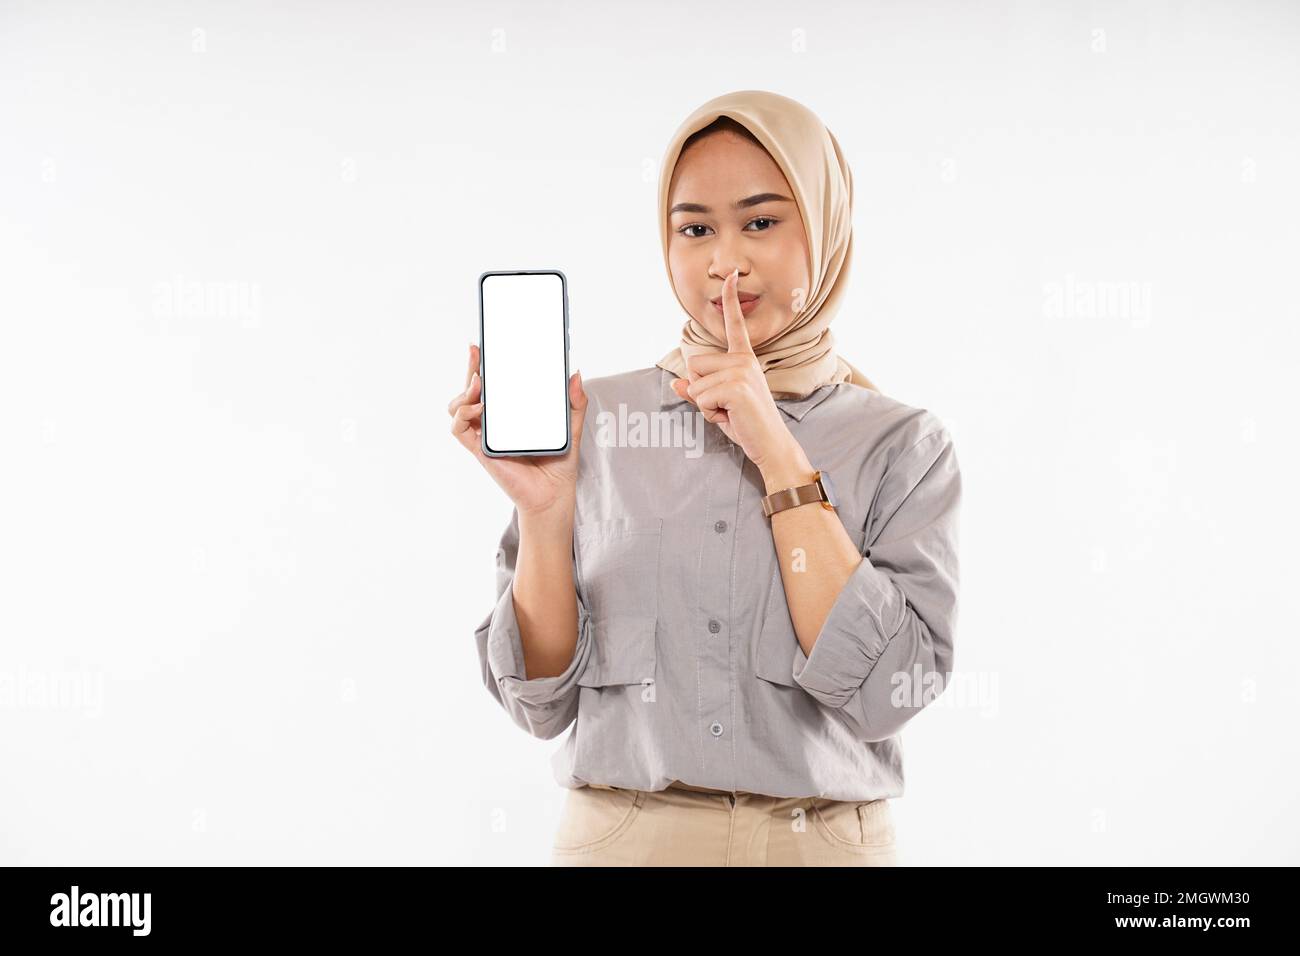 une femme avec le hijab a pointé son doigt avant devant sa bouche Banque D'Images